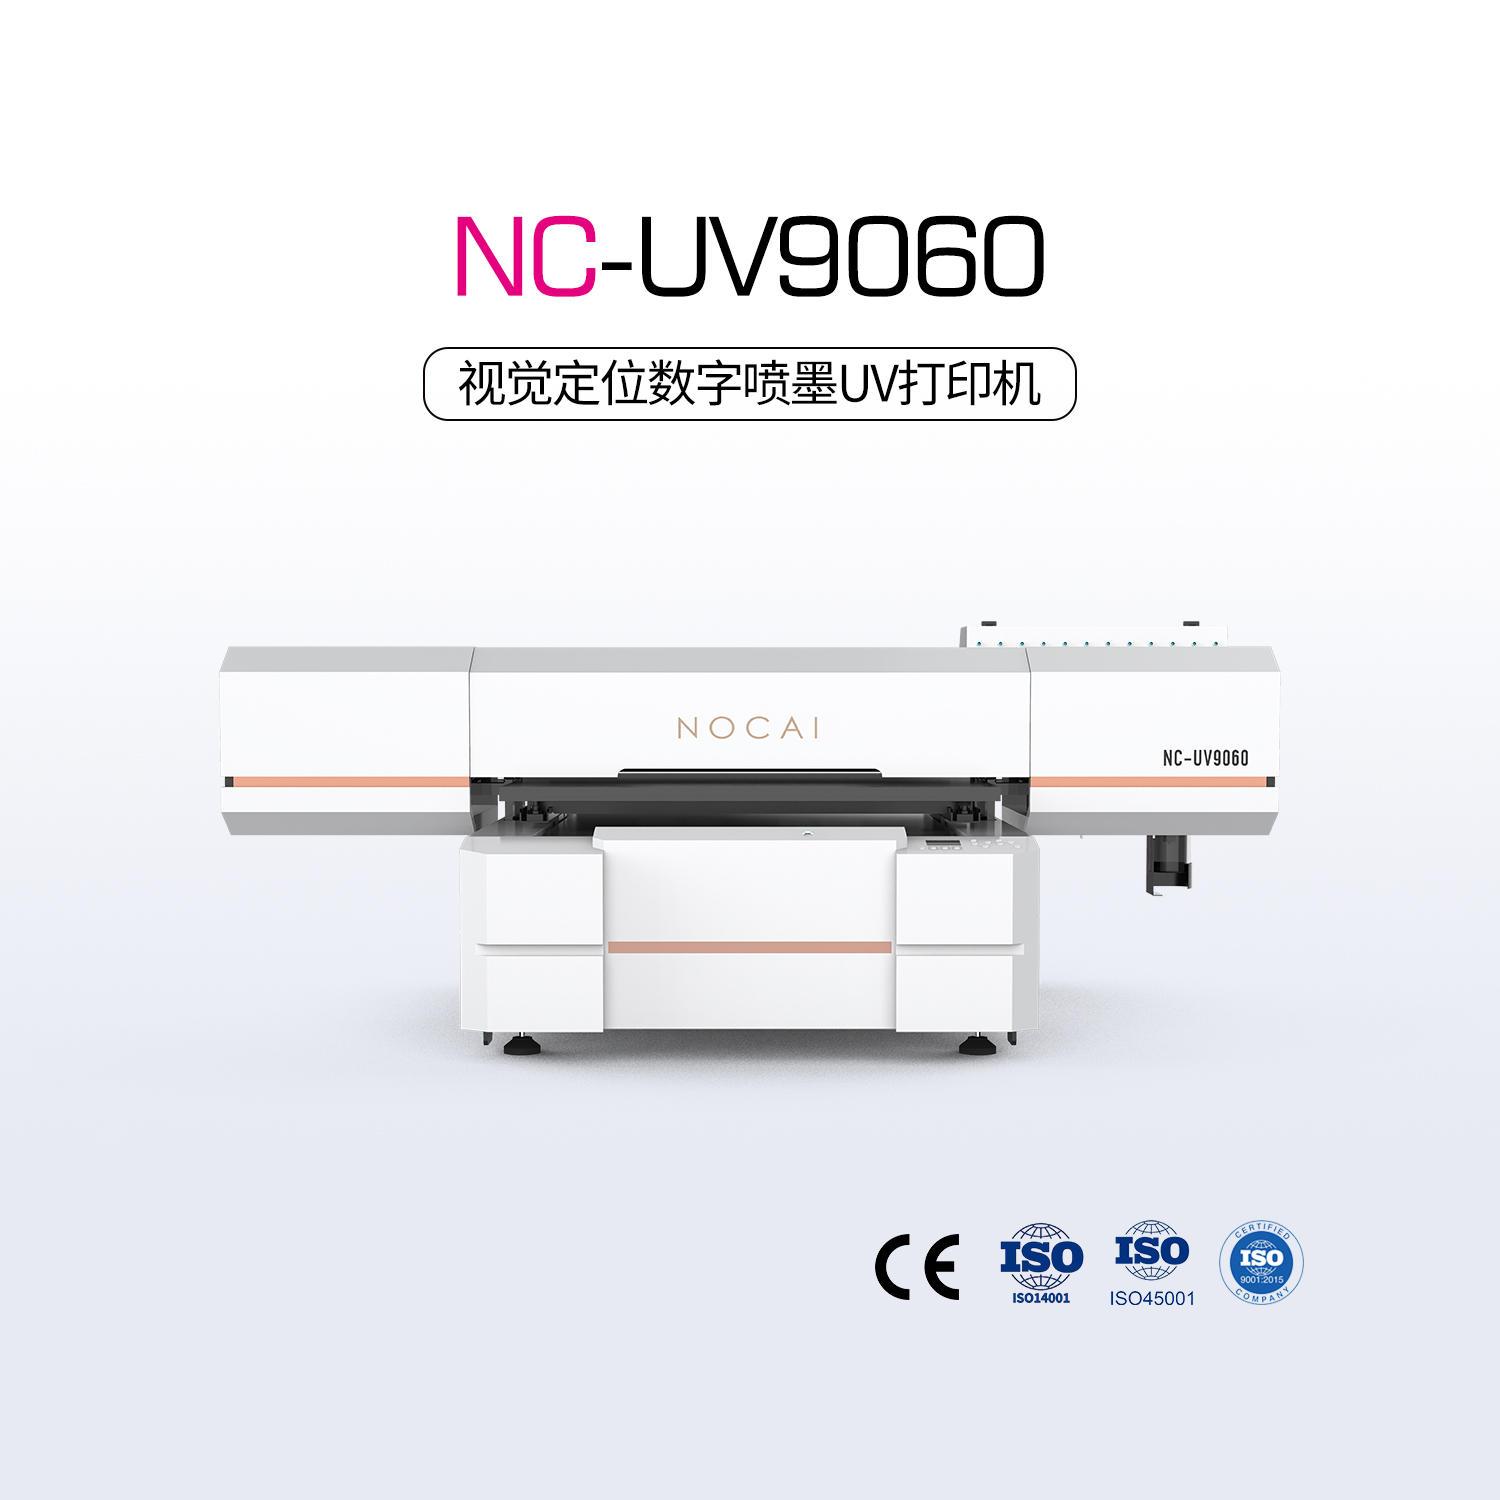 NC-UV9060